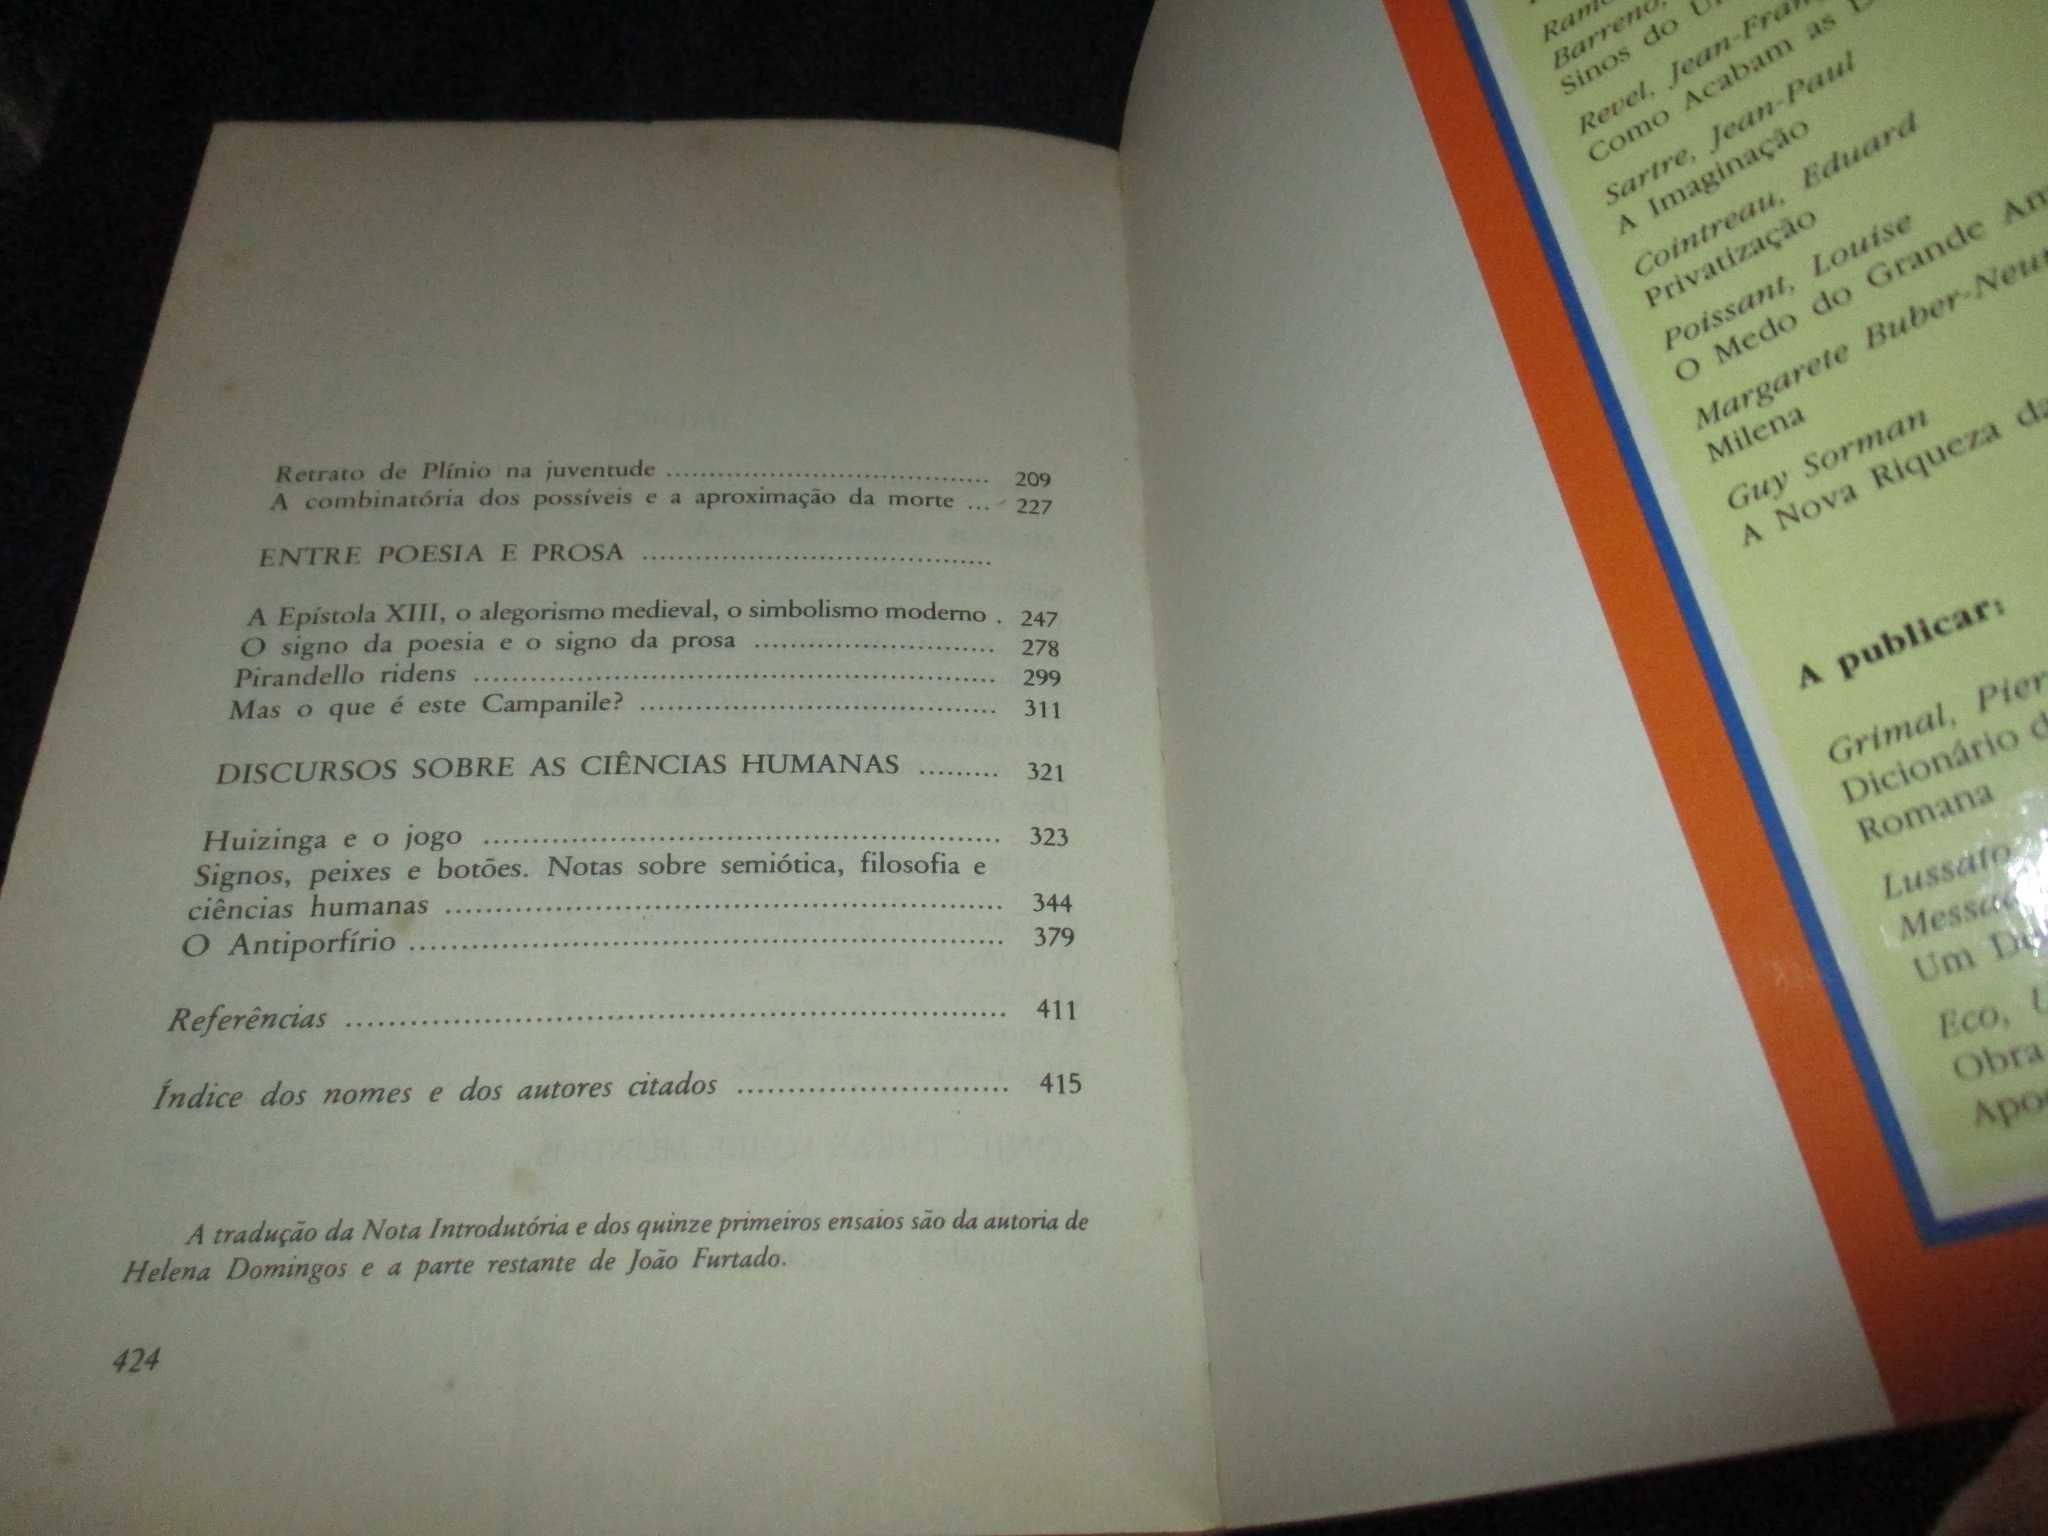 Livro Sobre os Espelhos e outros ensaios de Umberto Eco